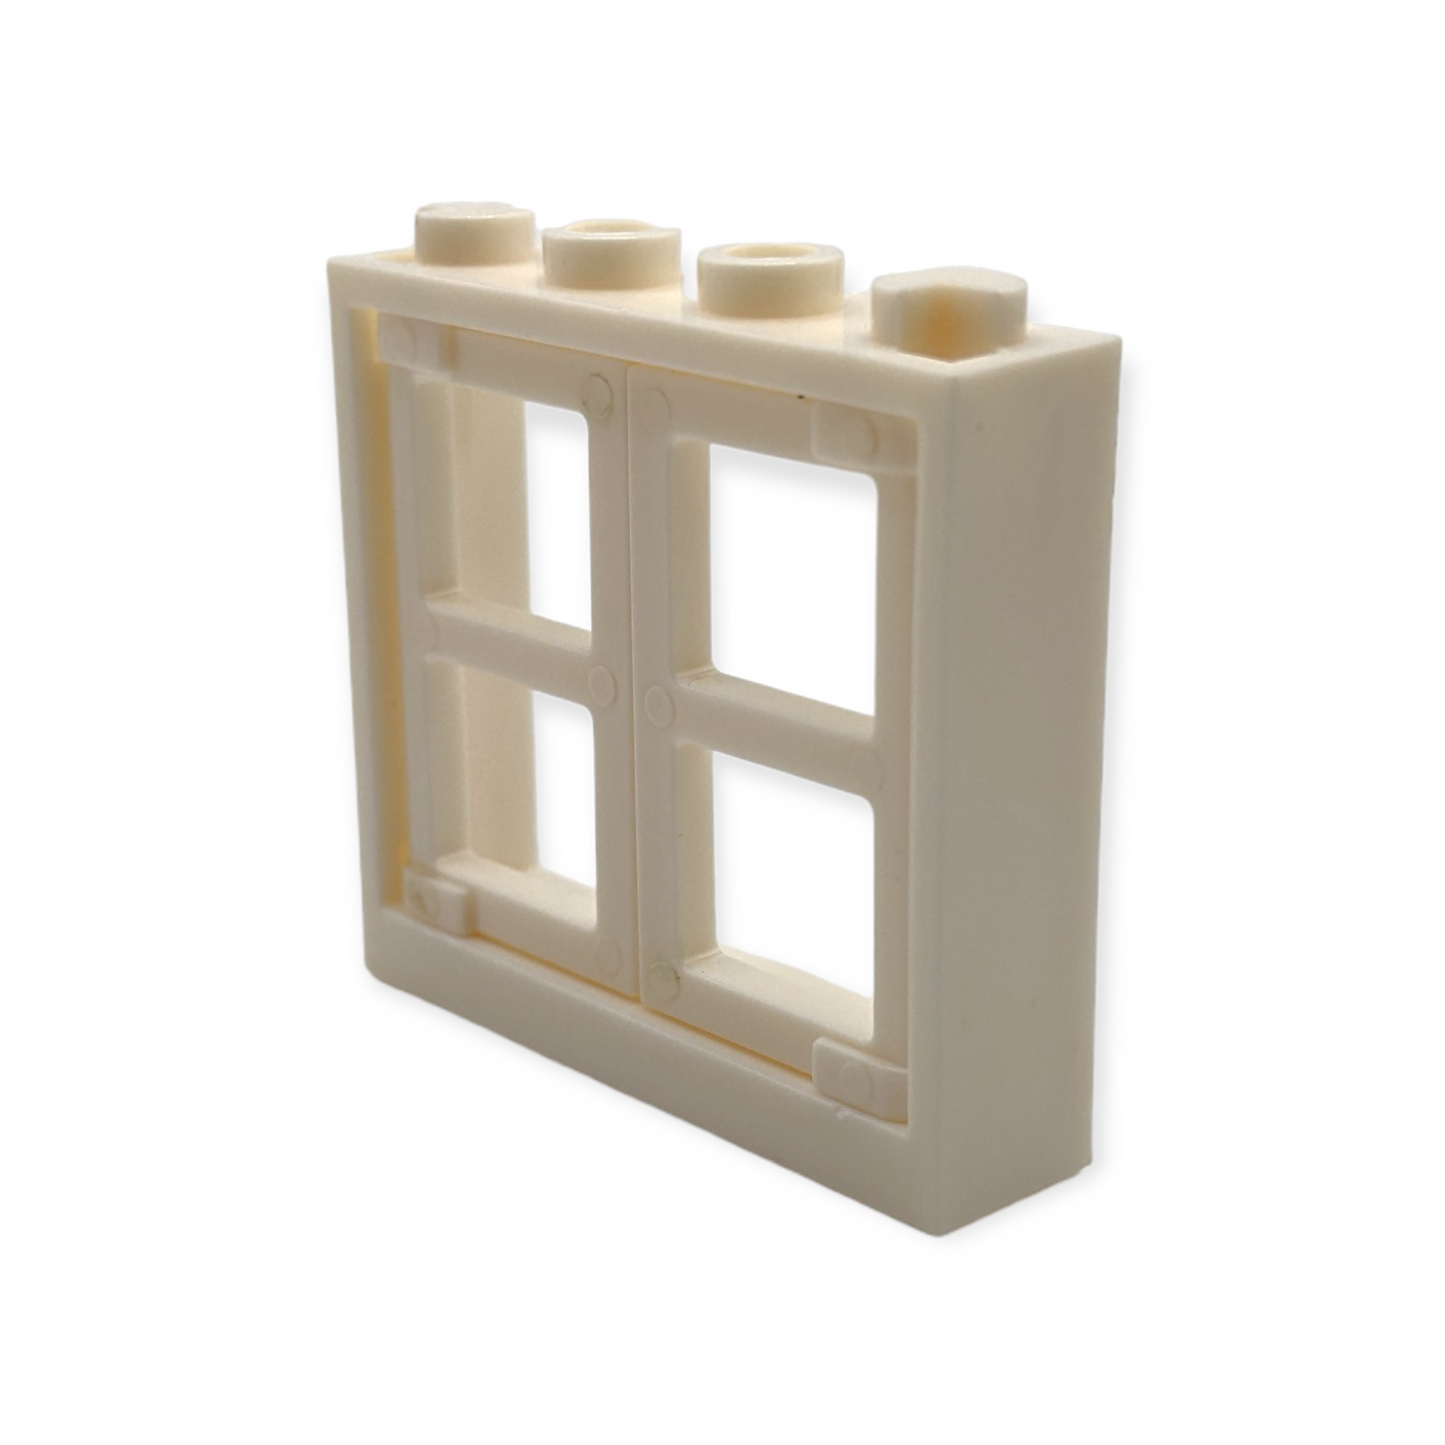 Fensterrahmen 1x4x3 in Weiß mit weißen Fenstern